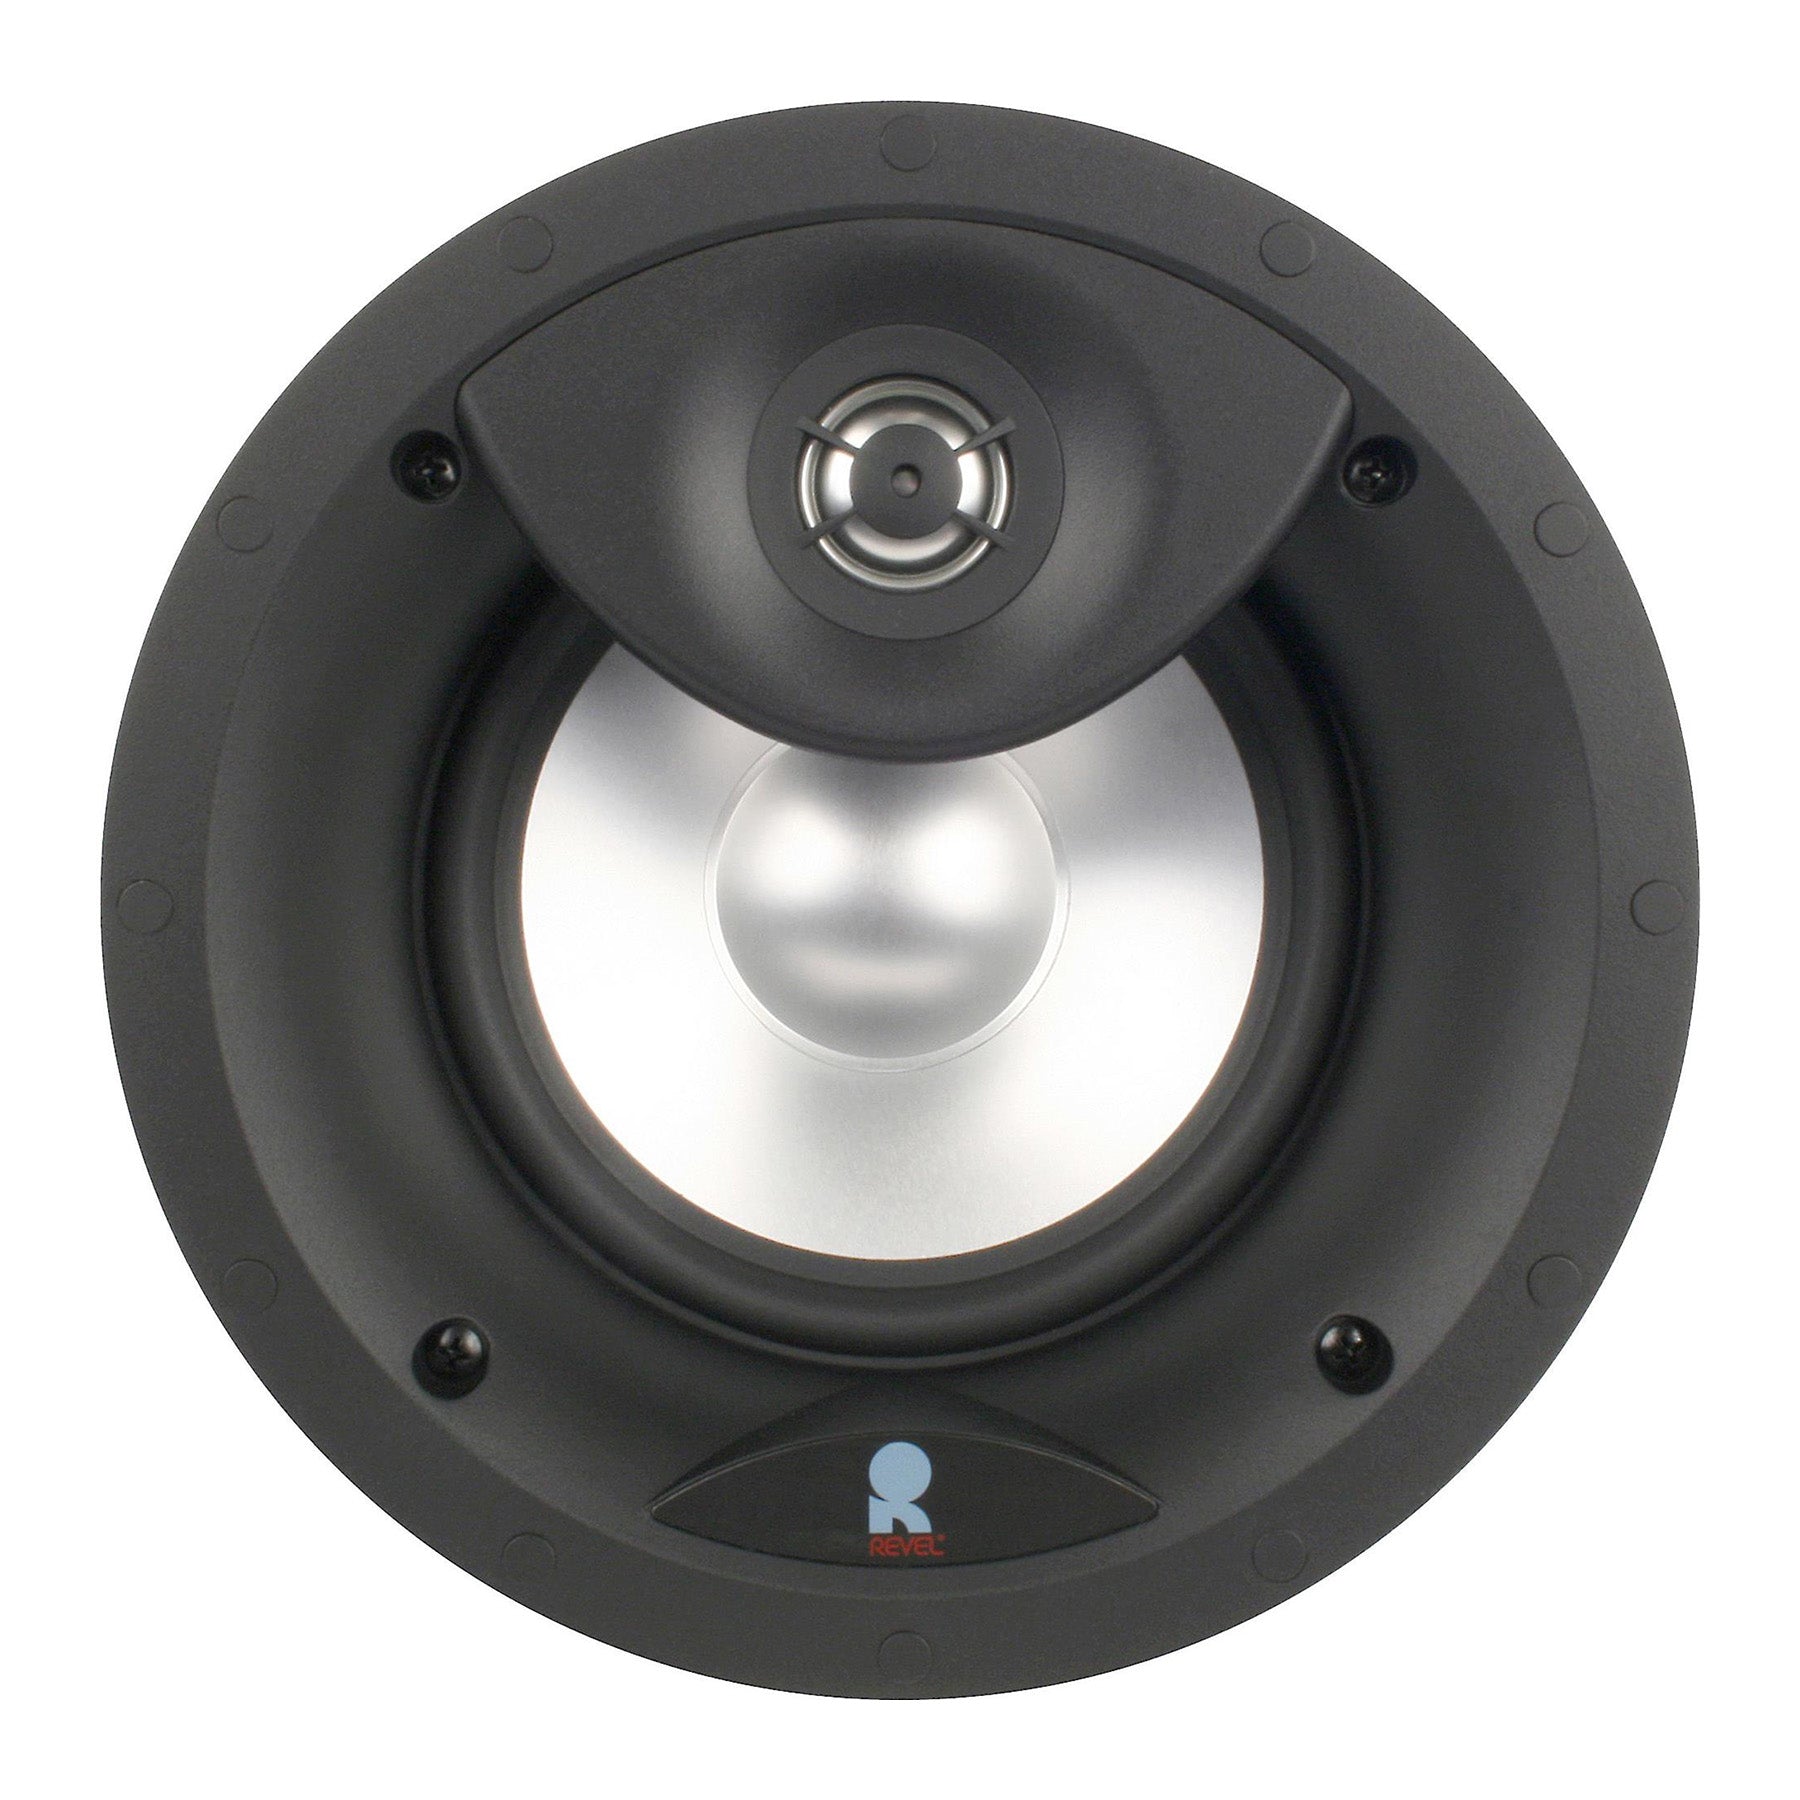 Revel C263 6 ½" In-Ceiling Loudspeaker